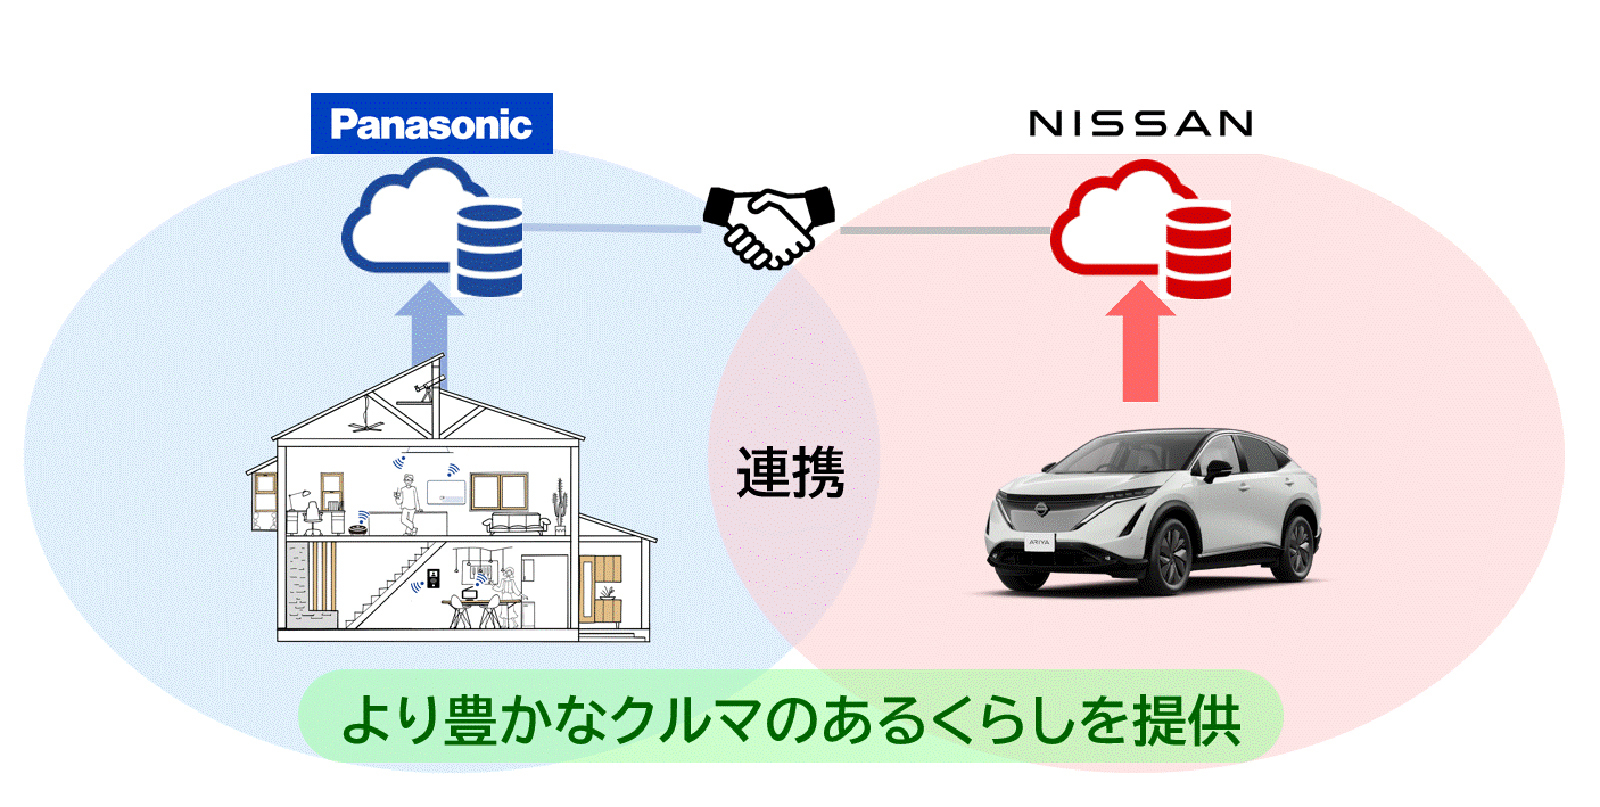 「NissanConnect」と「音声プッシュ通知」を連携した新サービスを開始